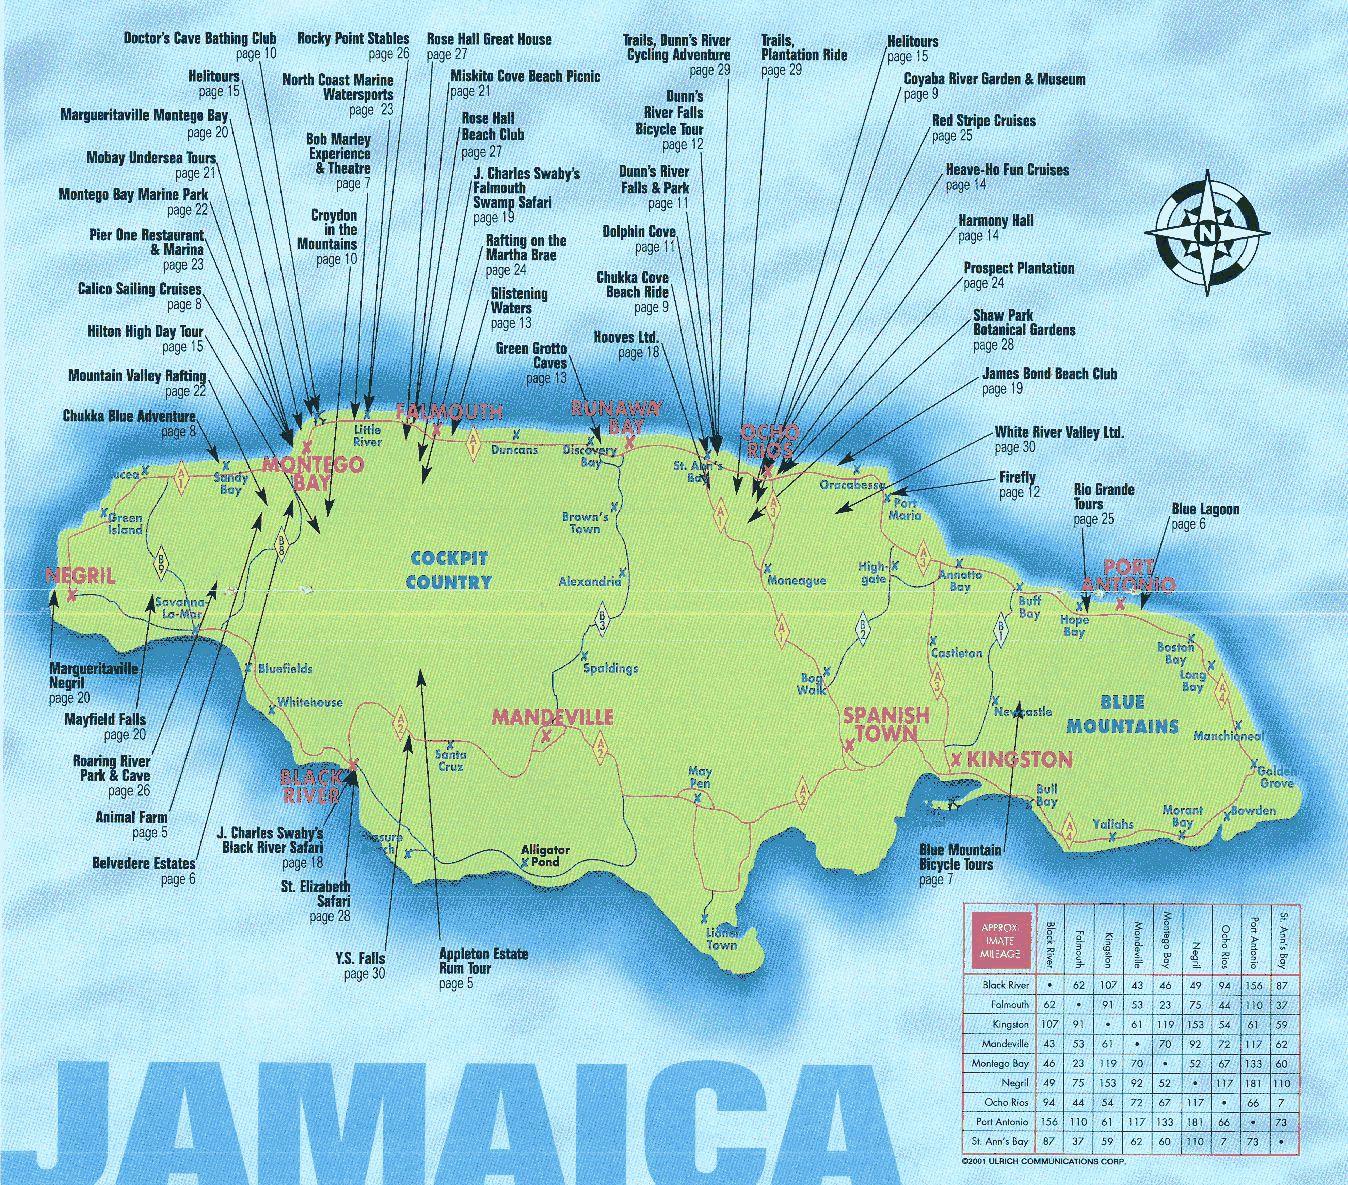 jamaica tourism website